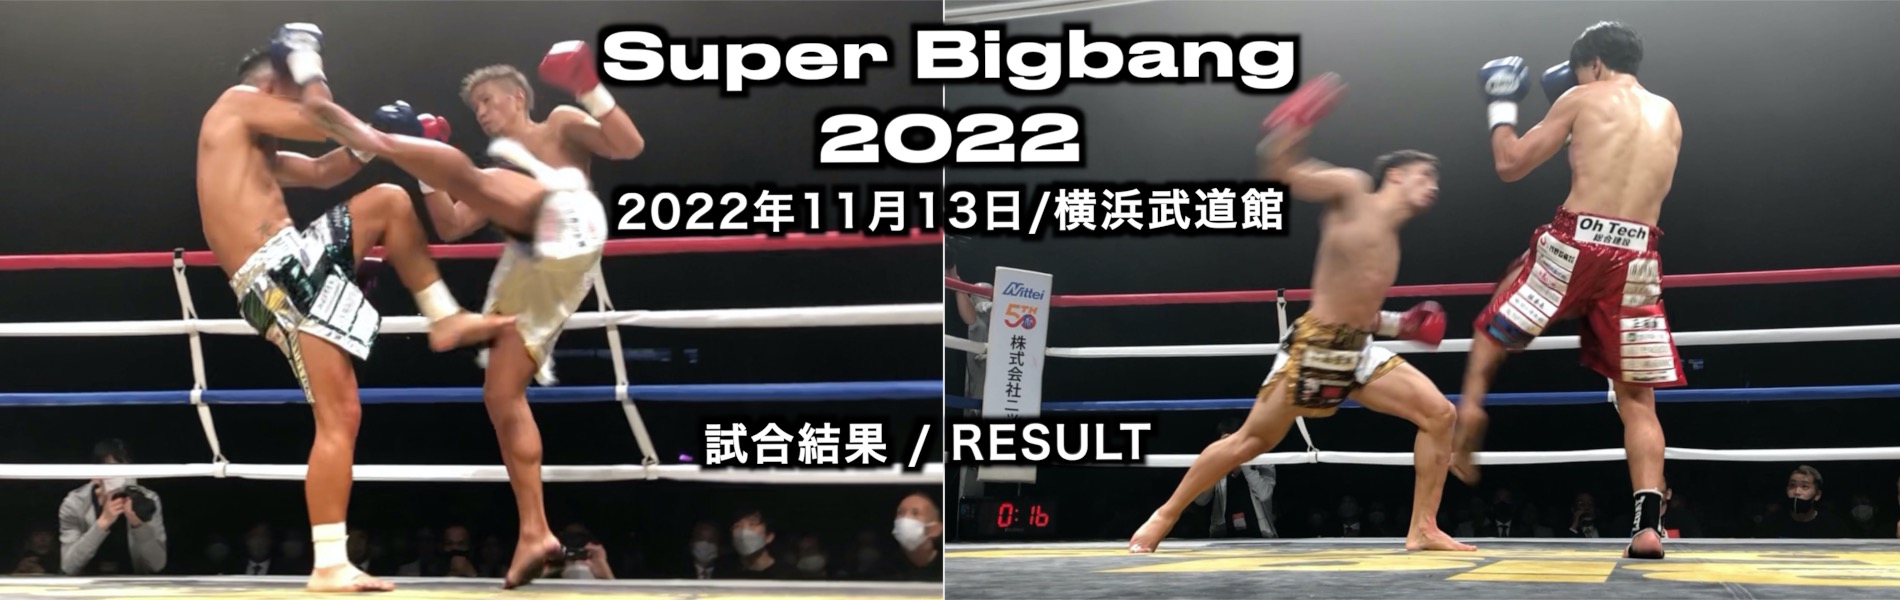 Super Bigbang 2022 試合結果